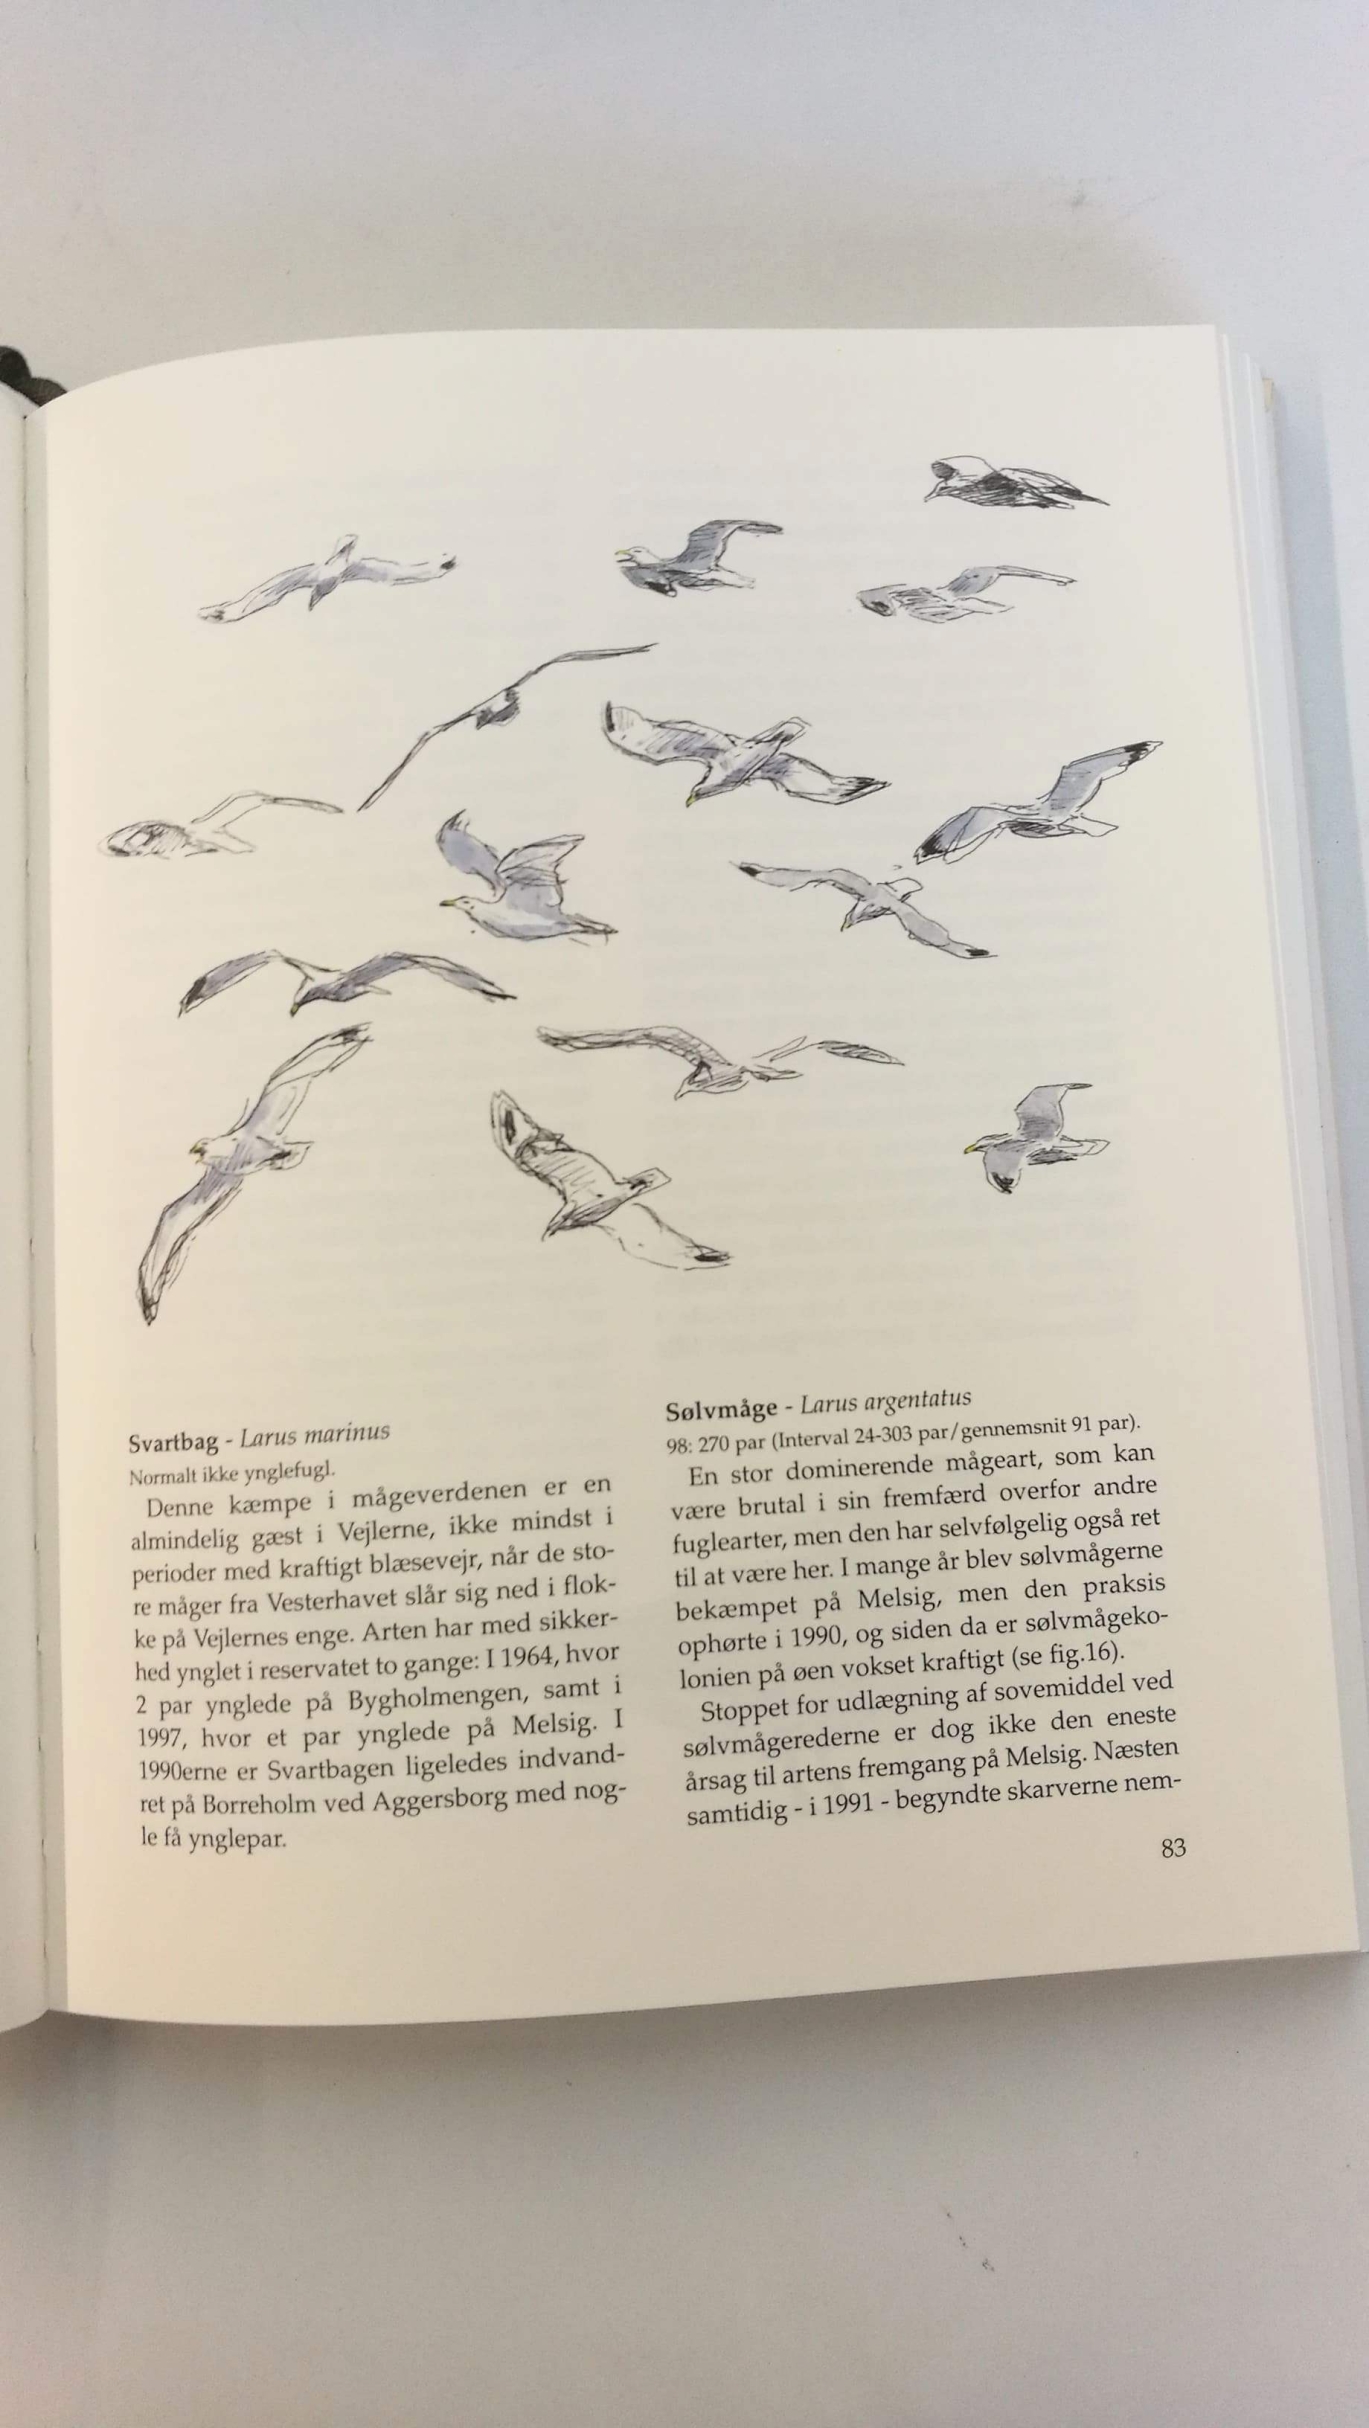 Hald-Mortensen, P.: Vejlernes Natur Status over reservatets mangfoldighet - 1998